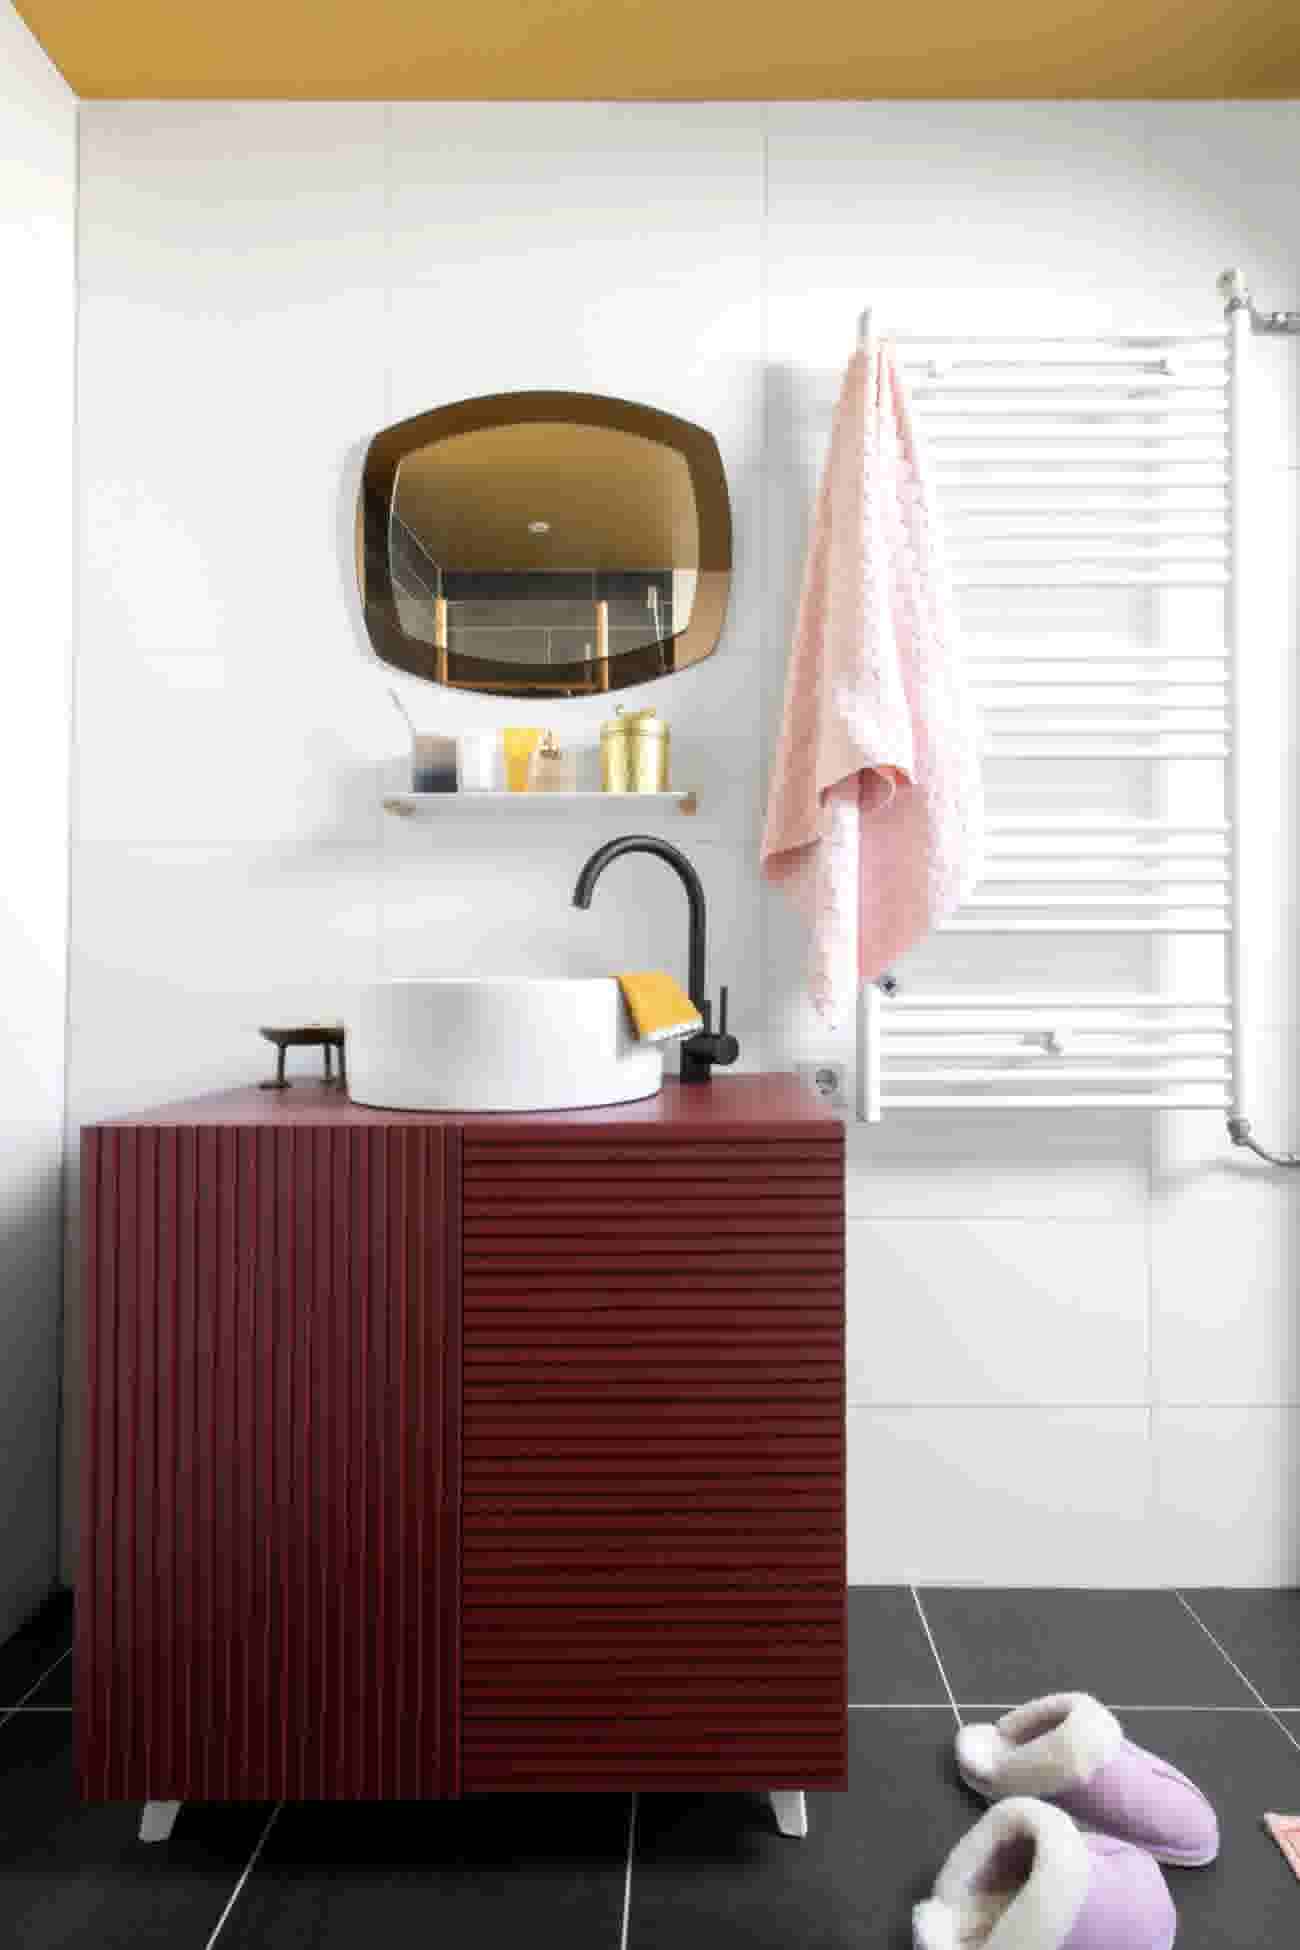 vork koper contrast Inspiratie en ideeën voor een badkamer op budget | Karwei